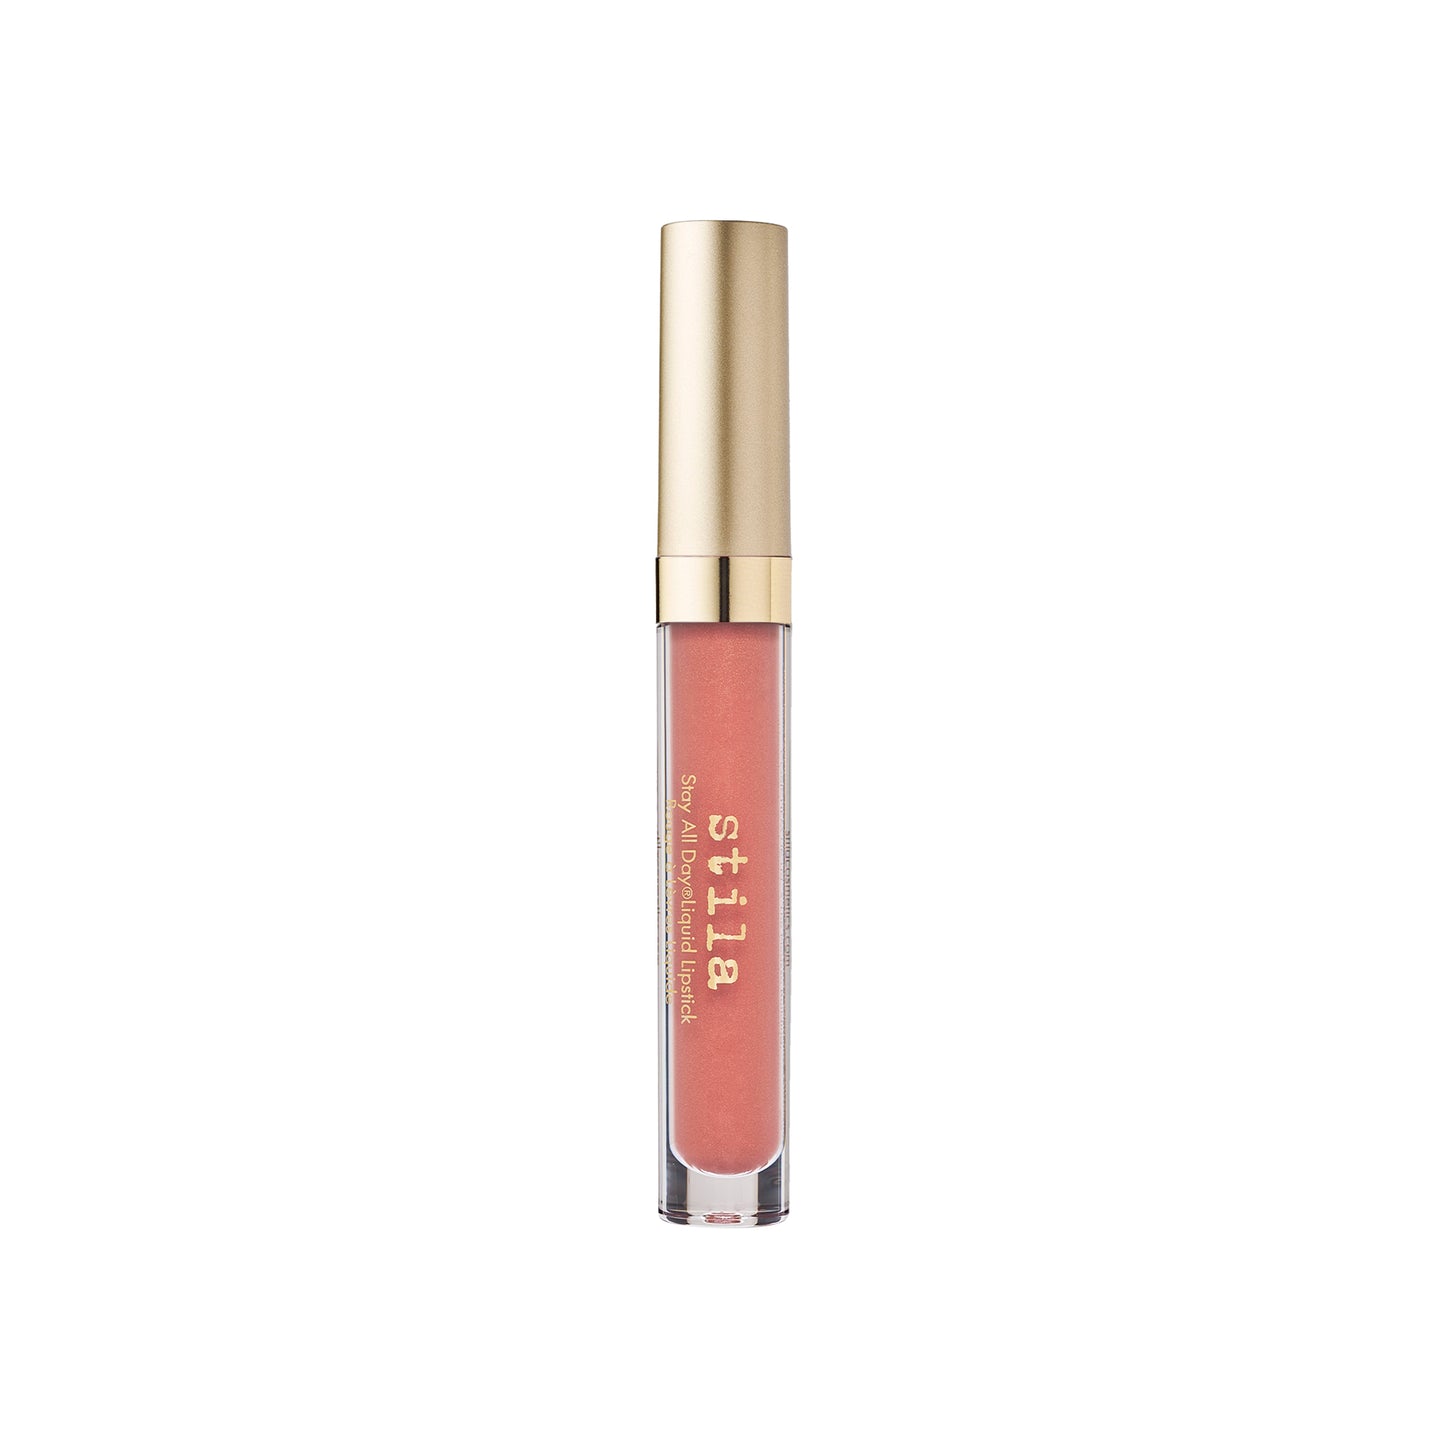 Stila - Stay All Day Liquid Lipstick - Shimmer Shade - Carina Shimmer